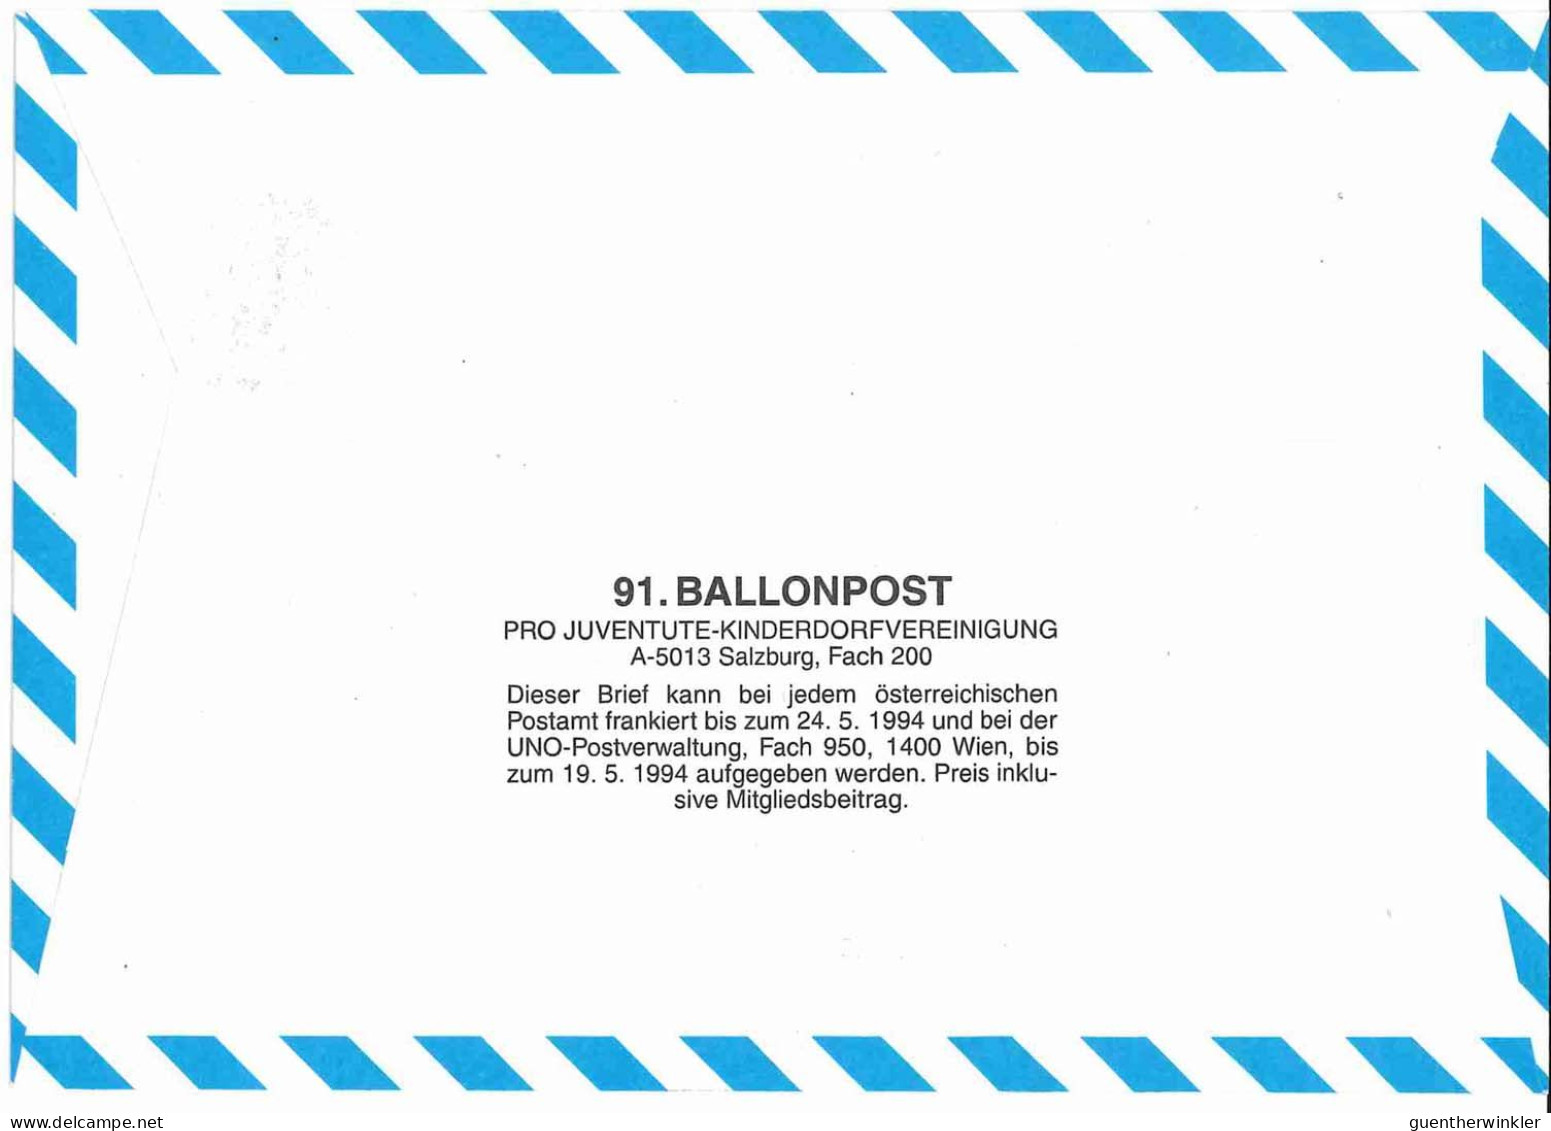 Regulärer Ballonpostflug Nr. 91a Der Pro Juventute [RBP91a] - Globos